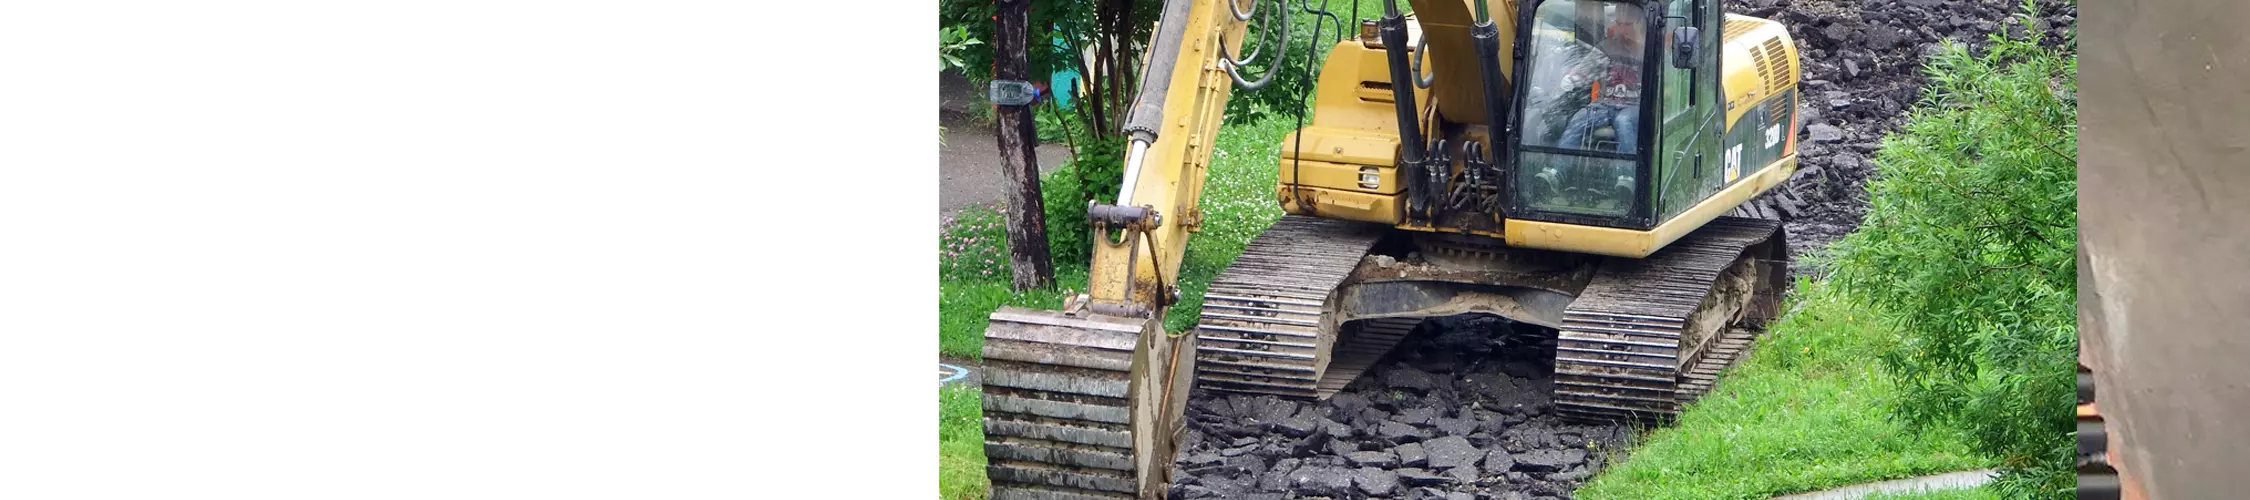 excavator digging up asphalt